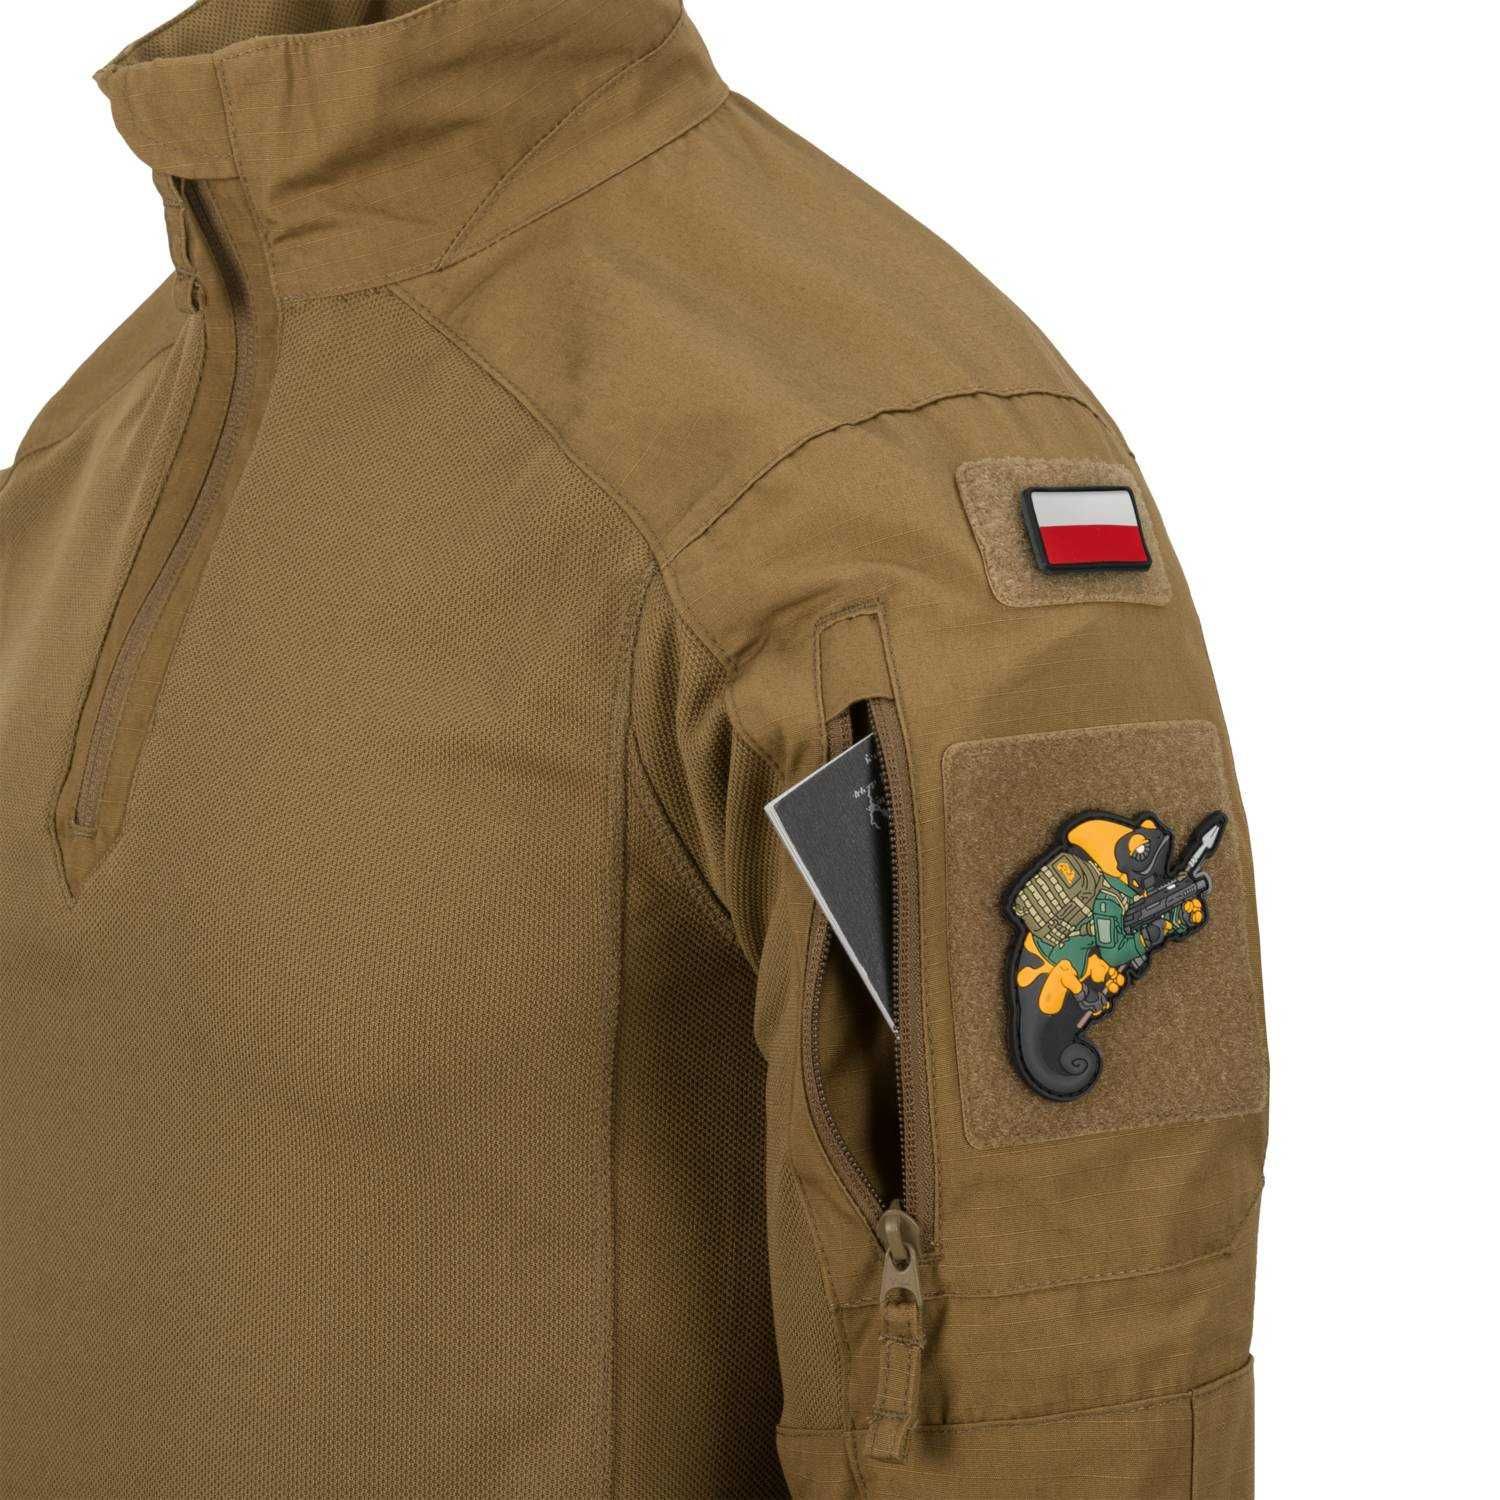 Bluza Wojskowa Helikon MCDU Combat Shirt NyCo RipStop Pantera /PL camo